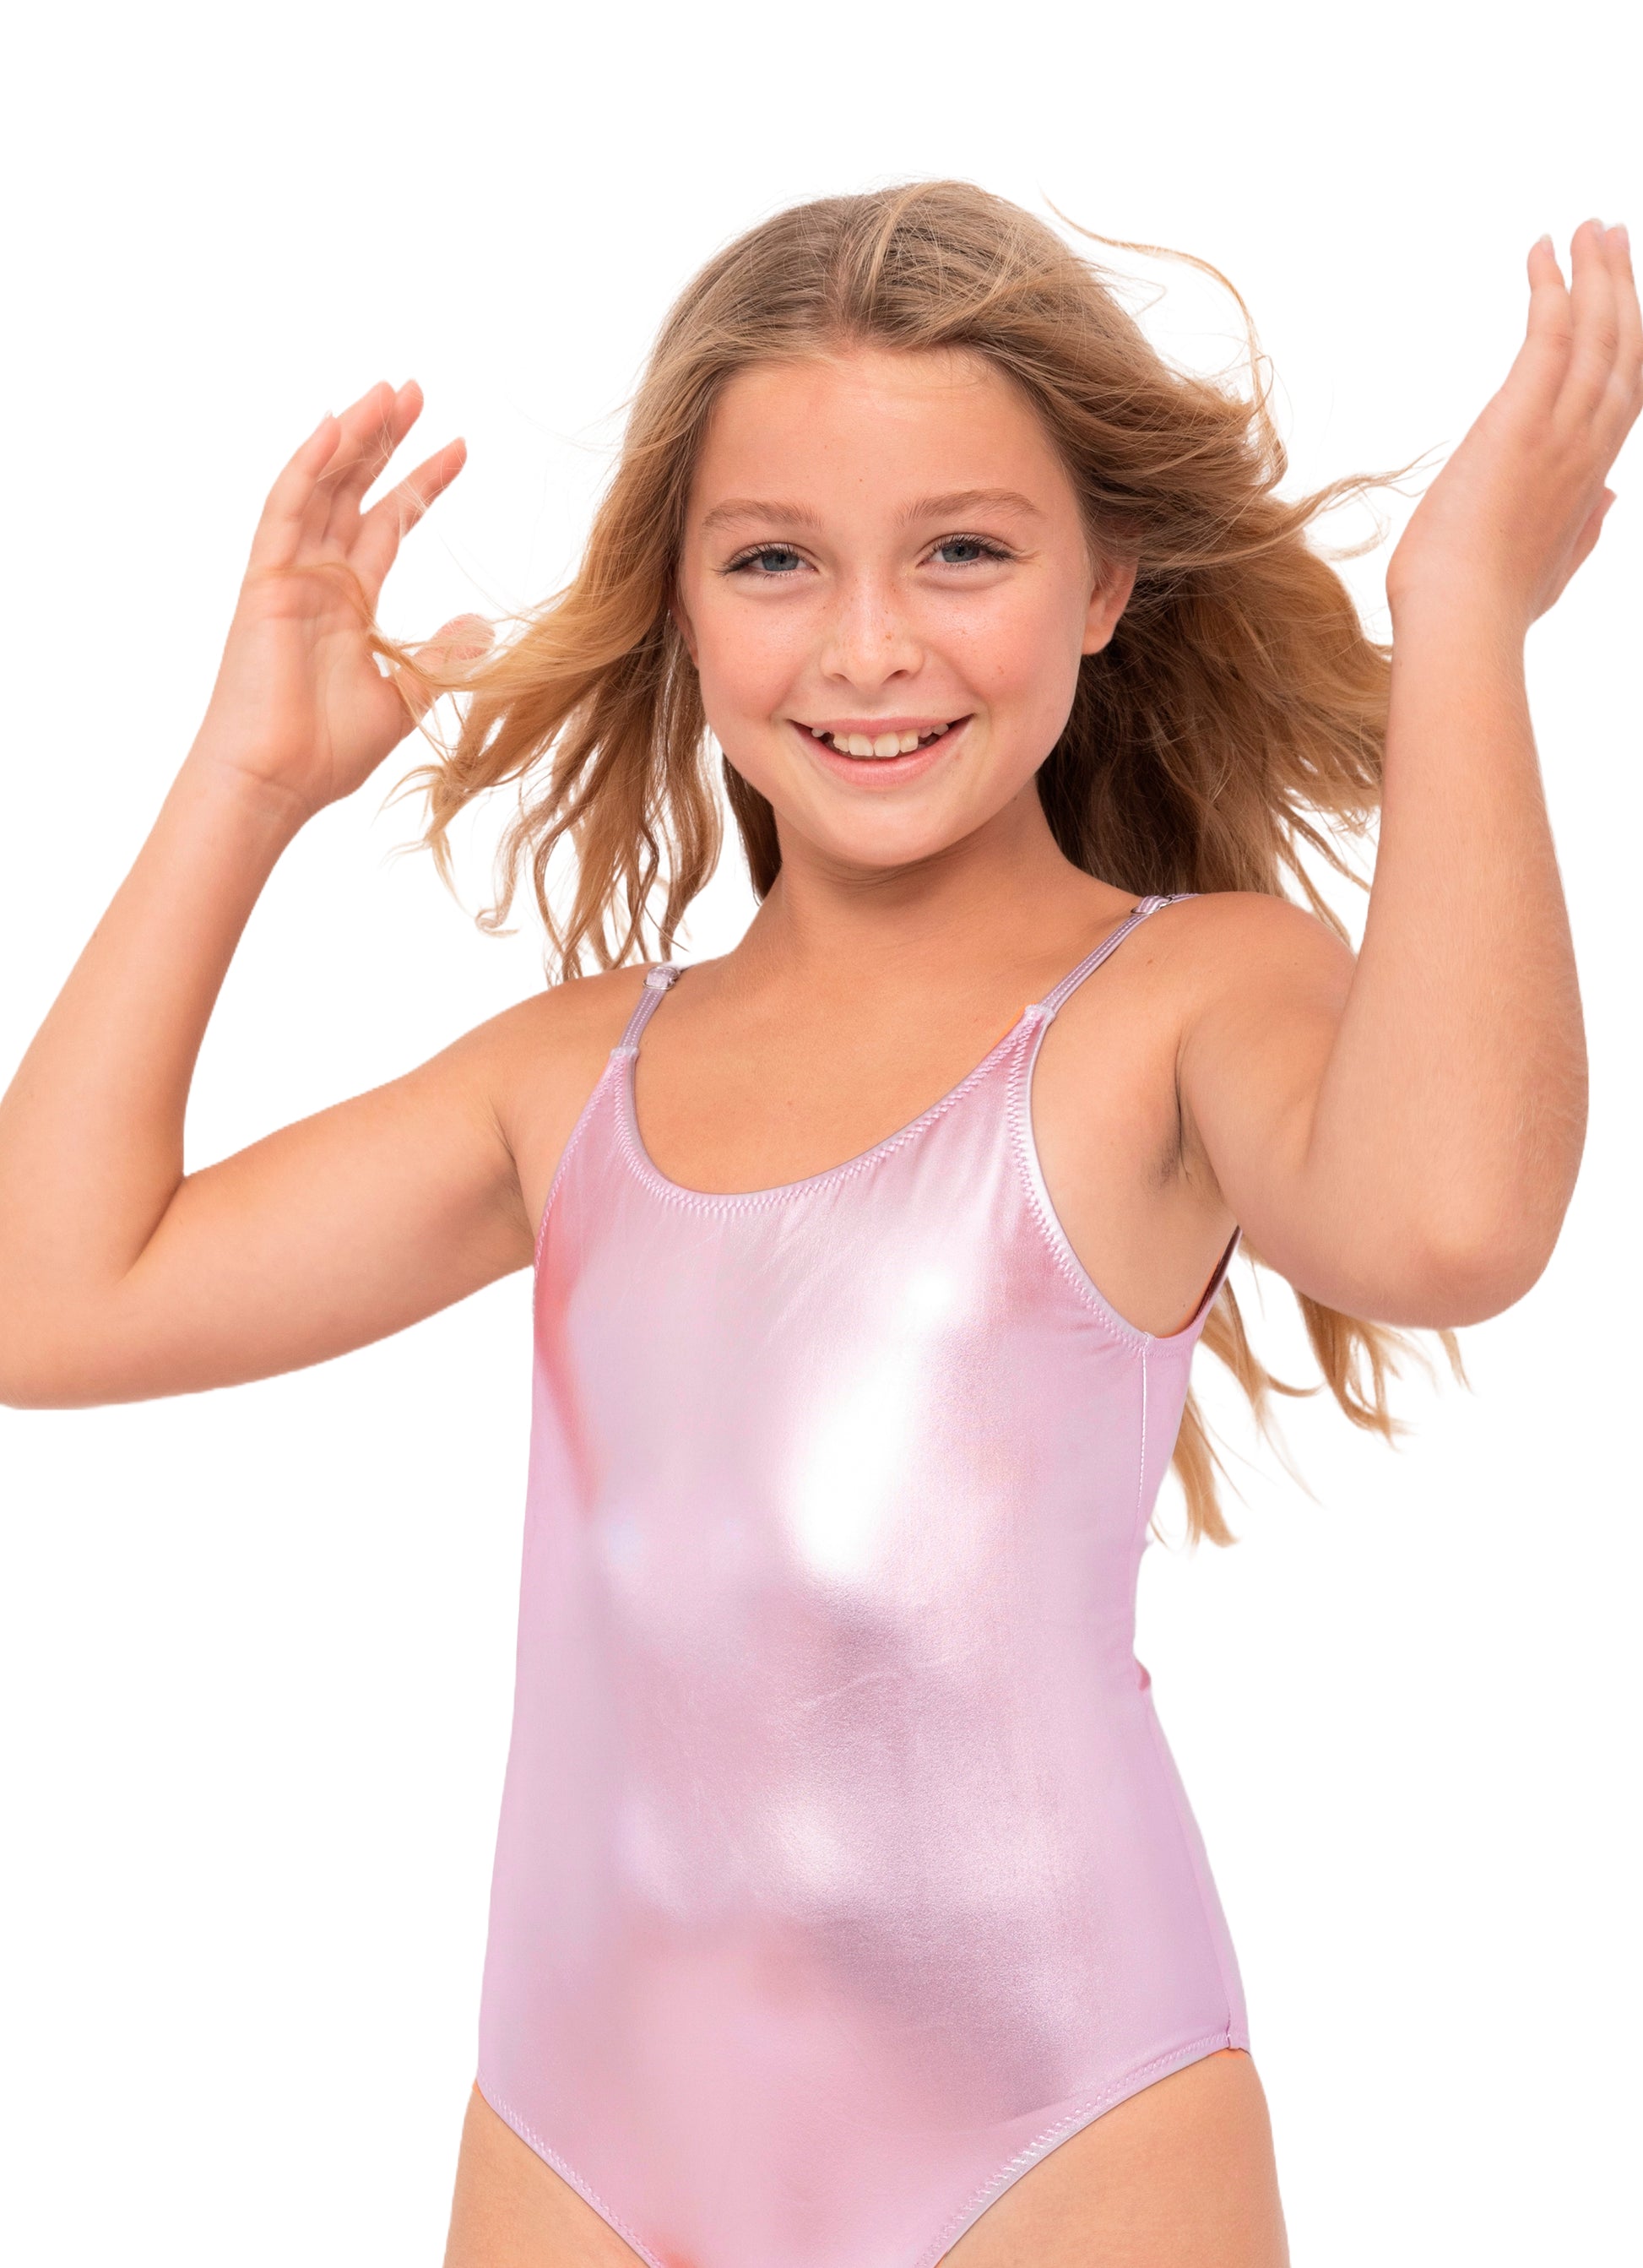 metallic pink swimsuit for girls, metallic pink bathing suit for girls, metallic pink bathing costume for tween girls, metallic pink swimsuit for teen girls